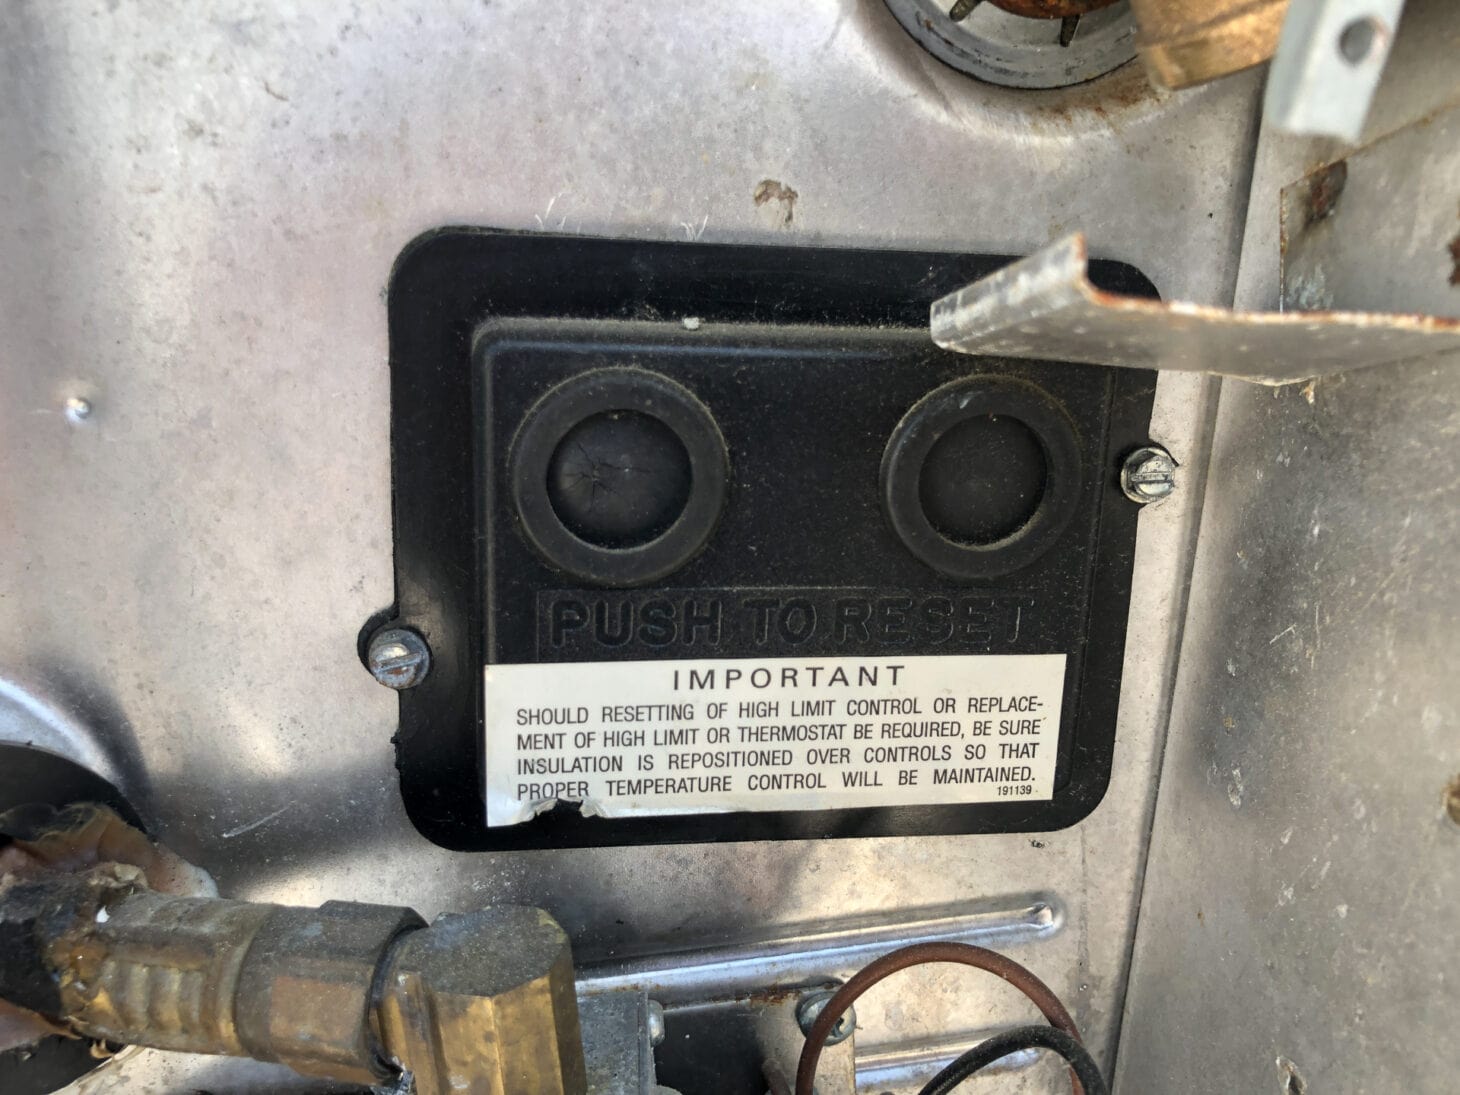 reset button on Suburban water heater